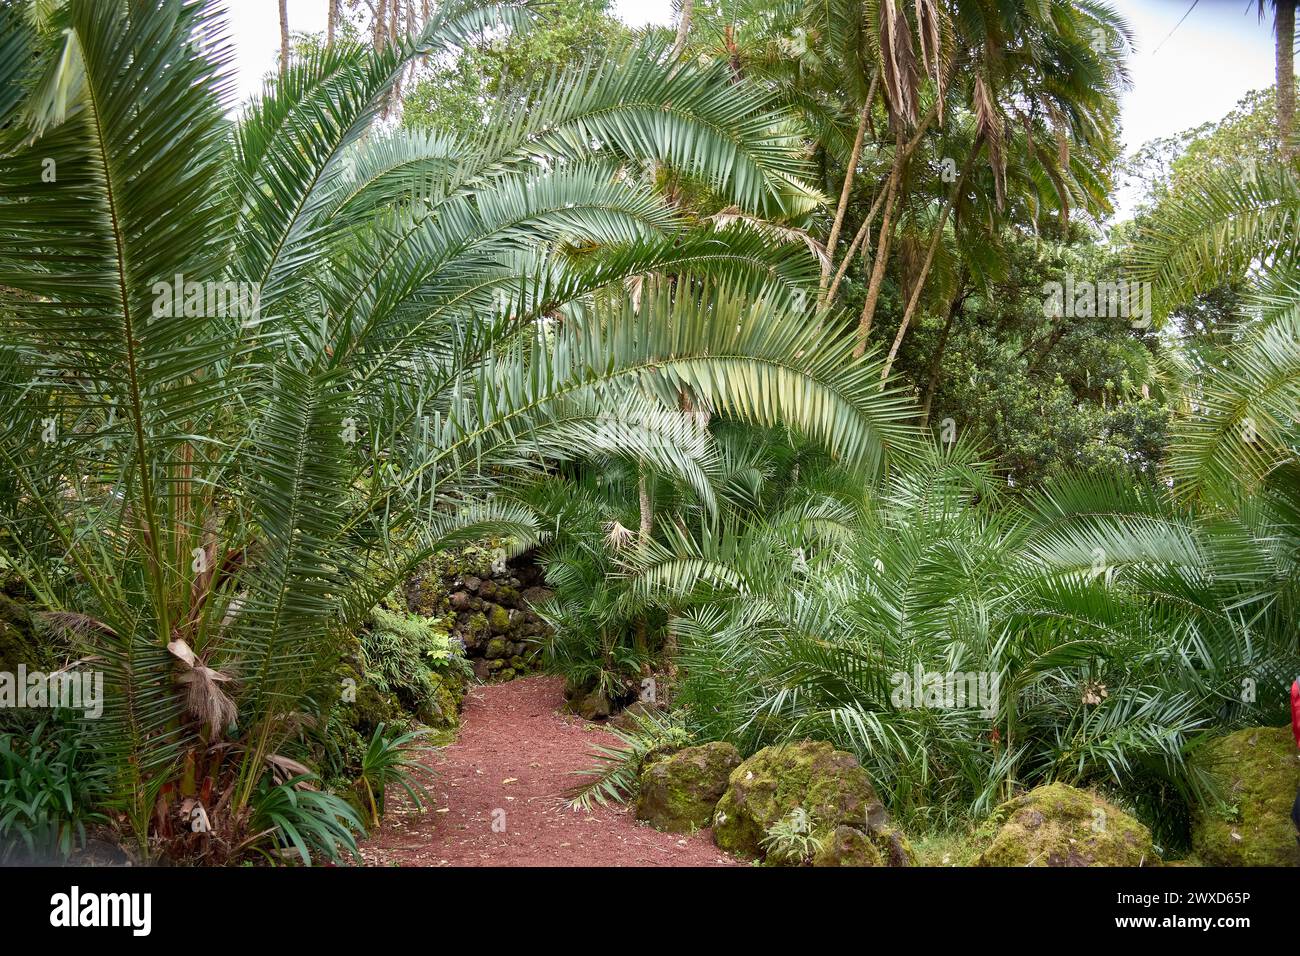 Jardim Botanico Antonio Borges. Ruhiger botanischer Garten auf den Azoren, Portugal, mit vielfältigen Pflanzenarten und ruhiger natürlicher Schönheit Stockfoto